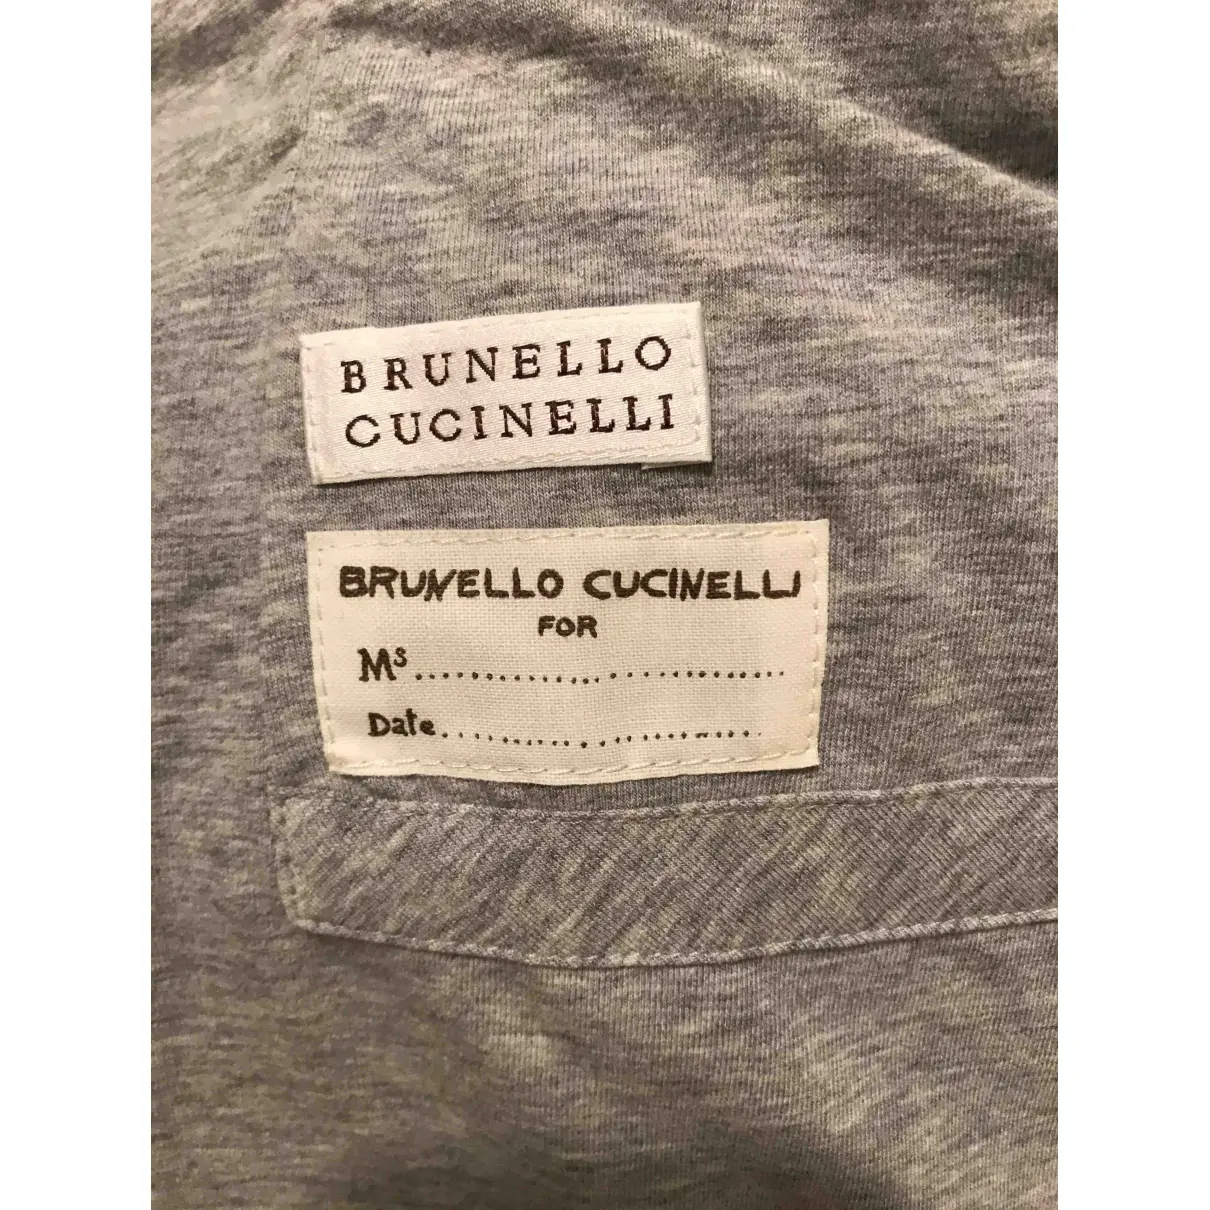 Buy Brunello Cucinelli Silk jacket online